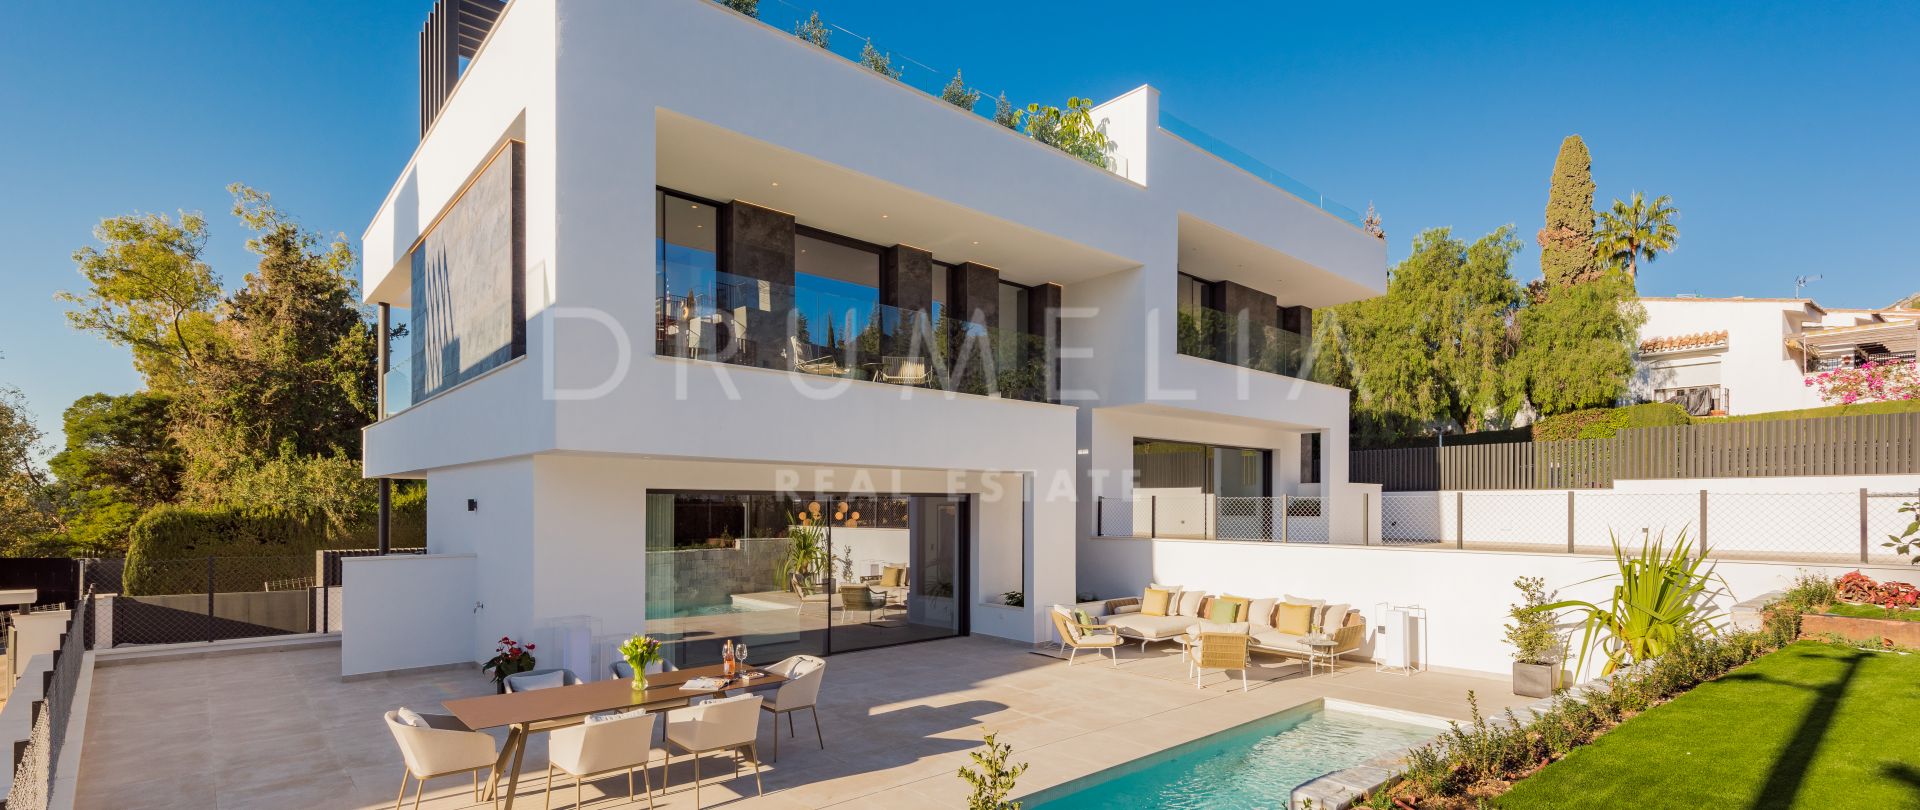 Brandneues modernes Luxus-Stadthaus, Sierra Blanca, Marbella Goldene Meile